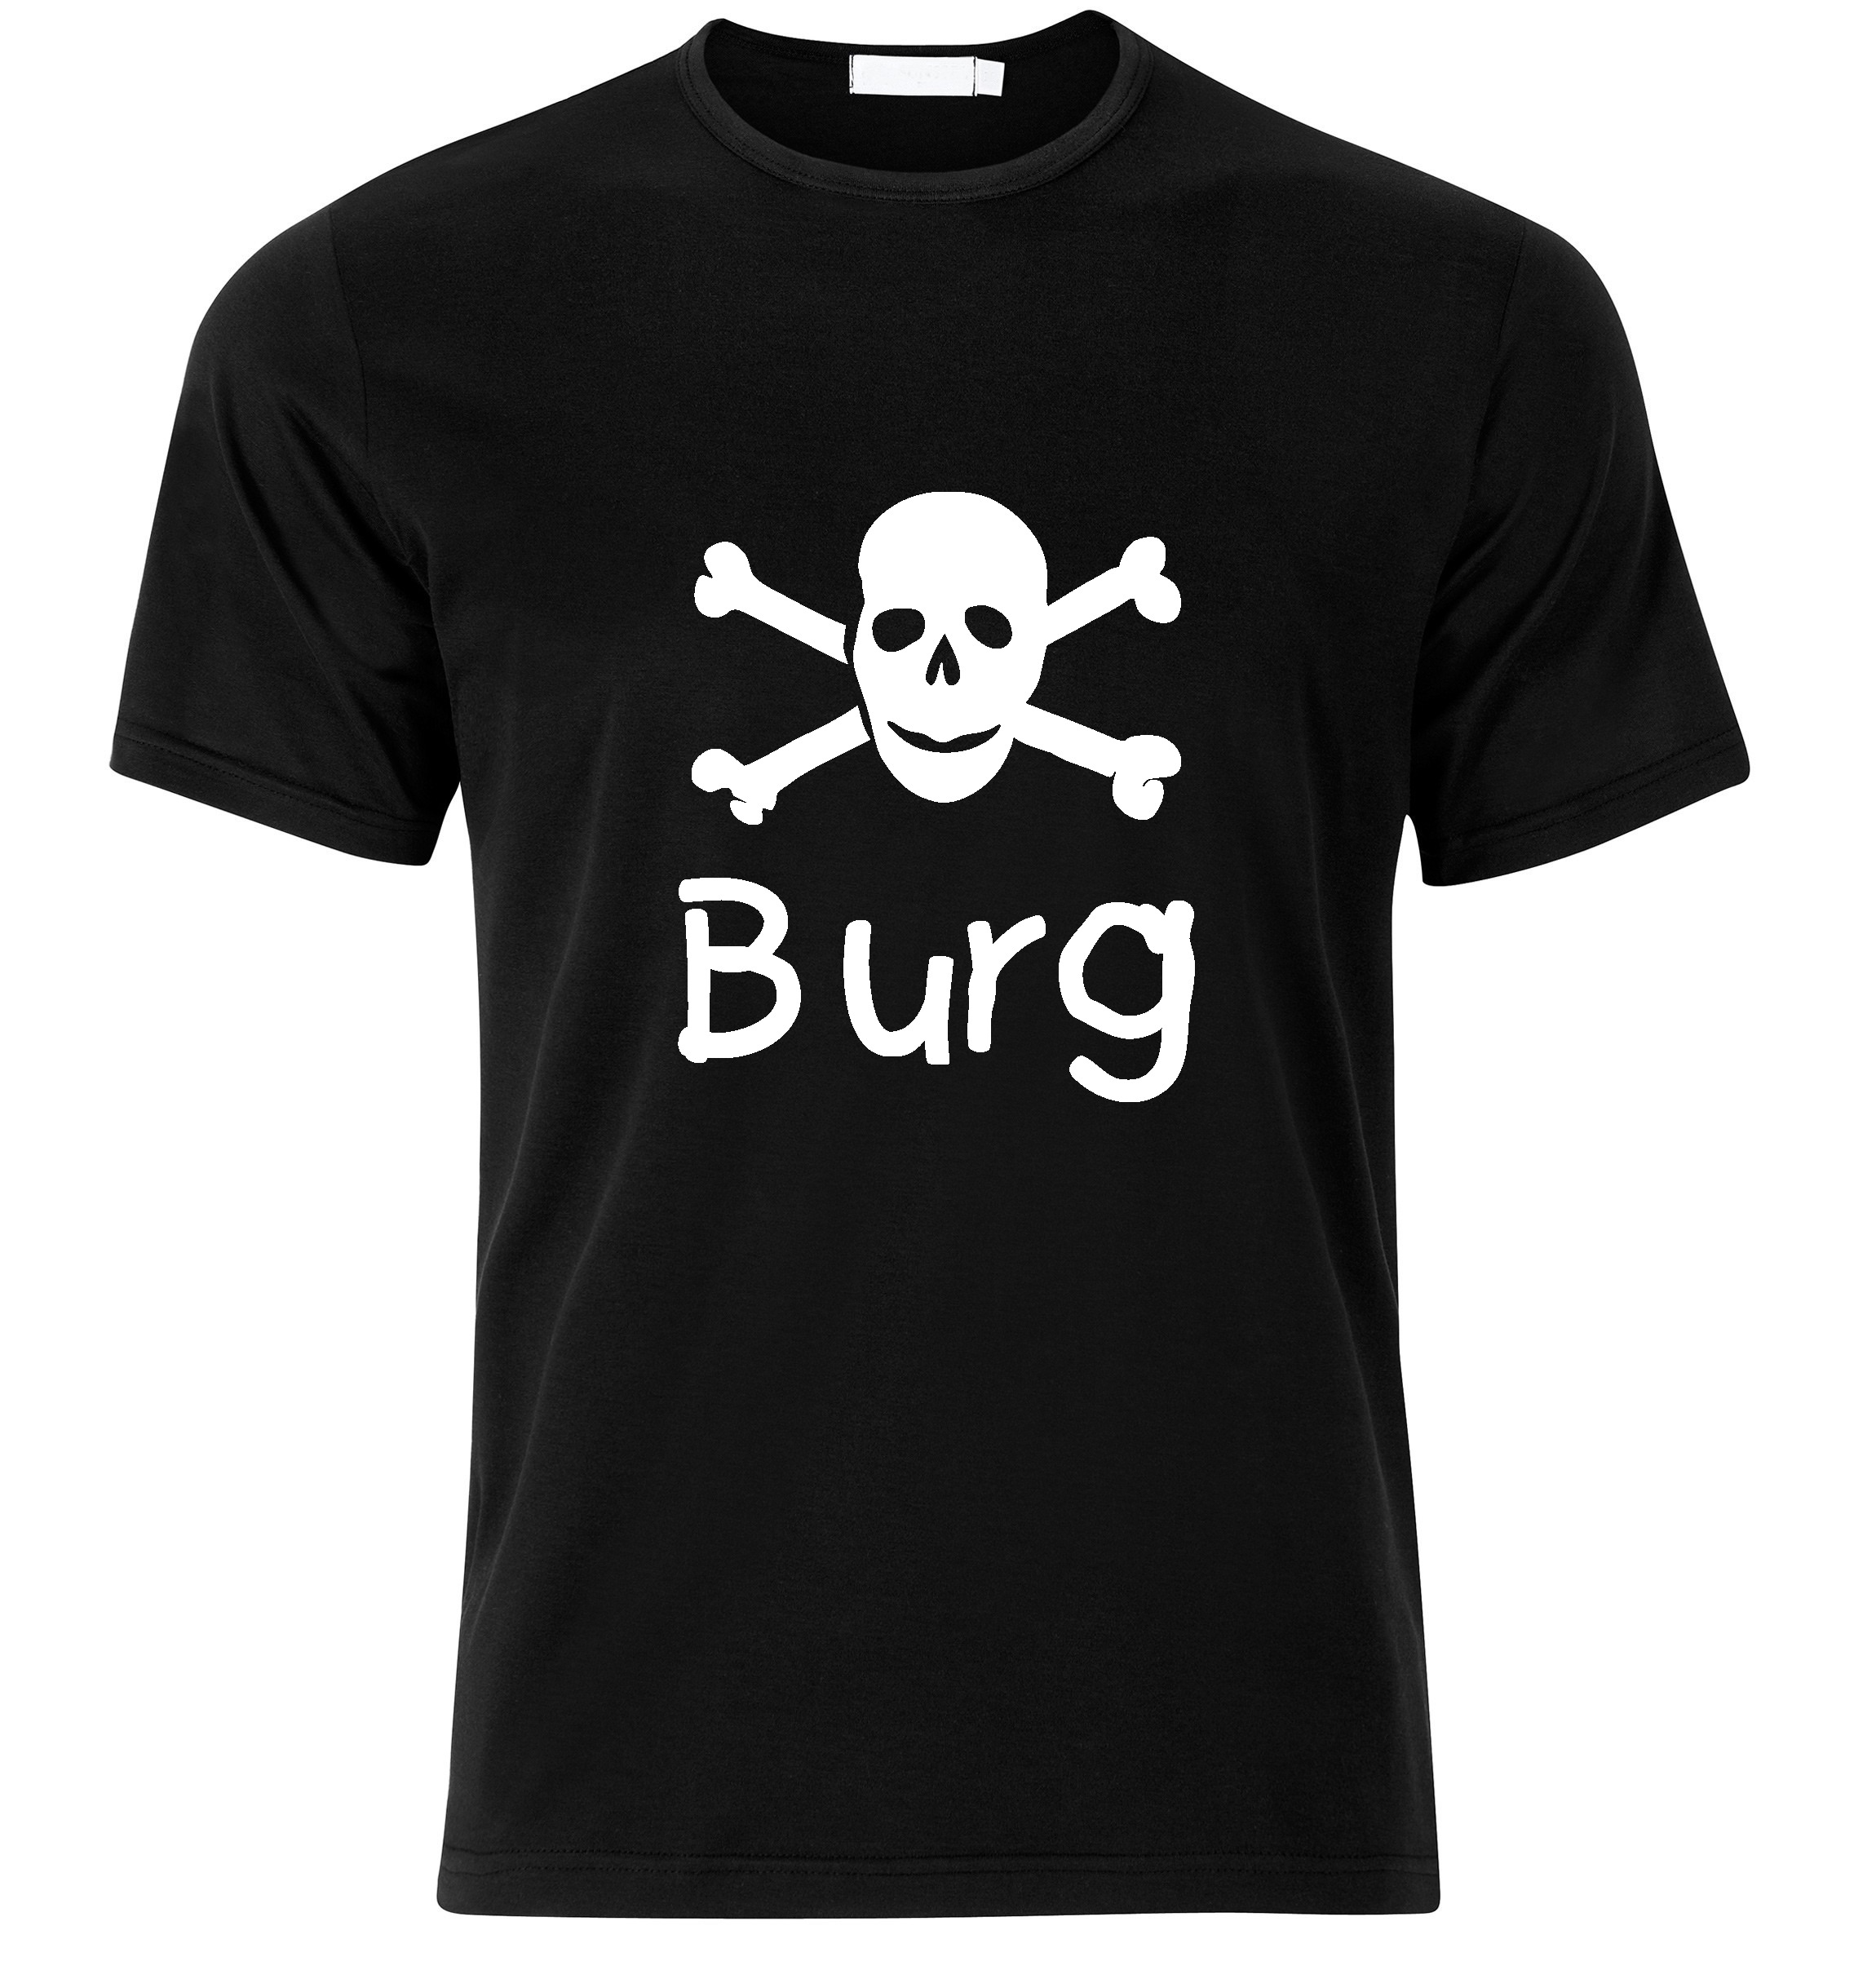 T-Shirt Burg Jolly Roger, Totenkopf